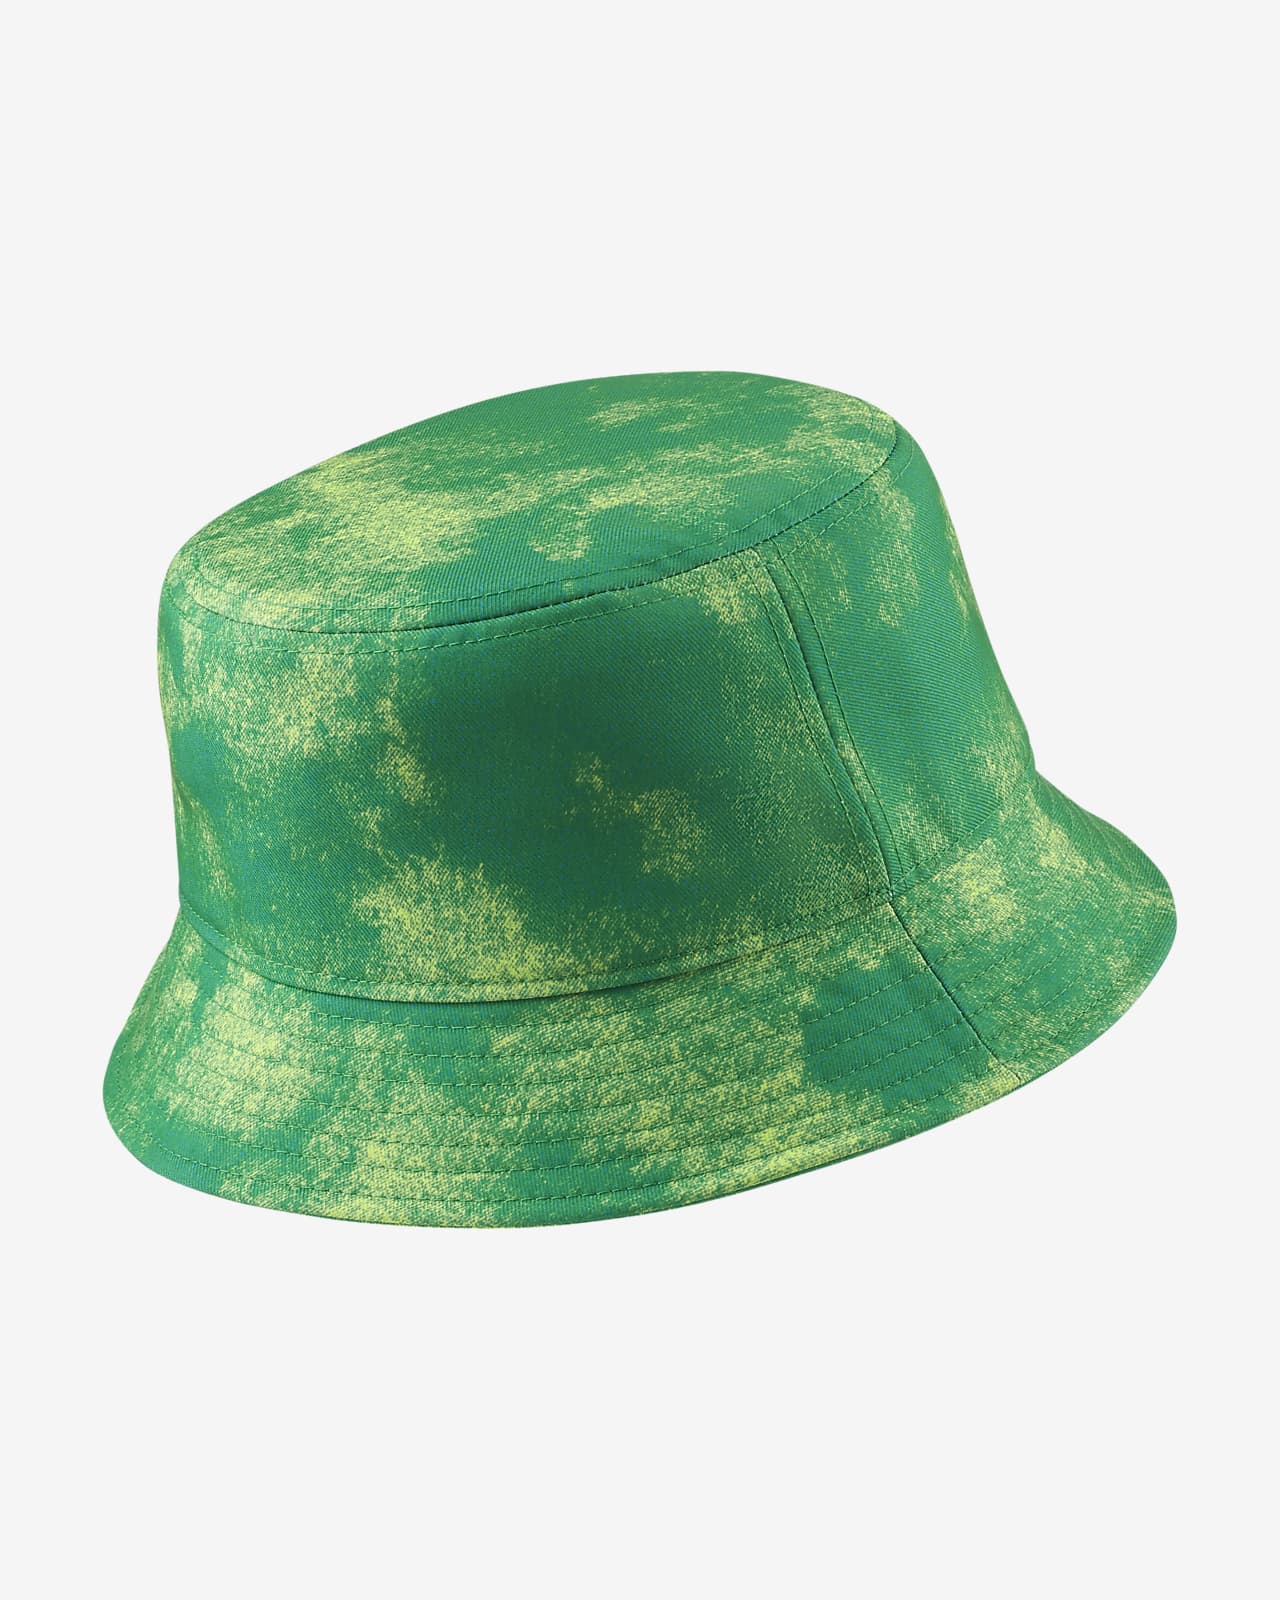 green nike bucket hat